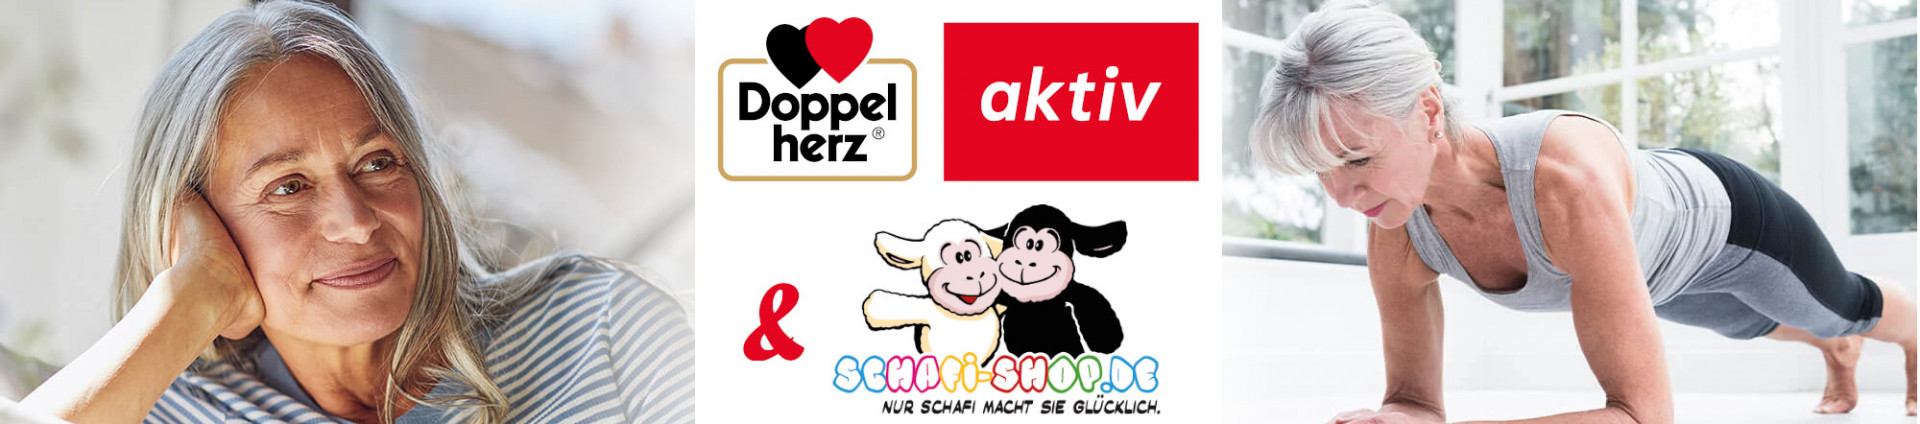 Logotipo de Doppelherz Aktiv y logotipo de Schafi-Shop con señora mayor